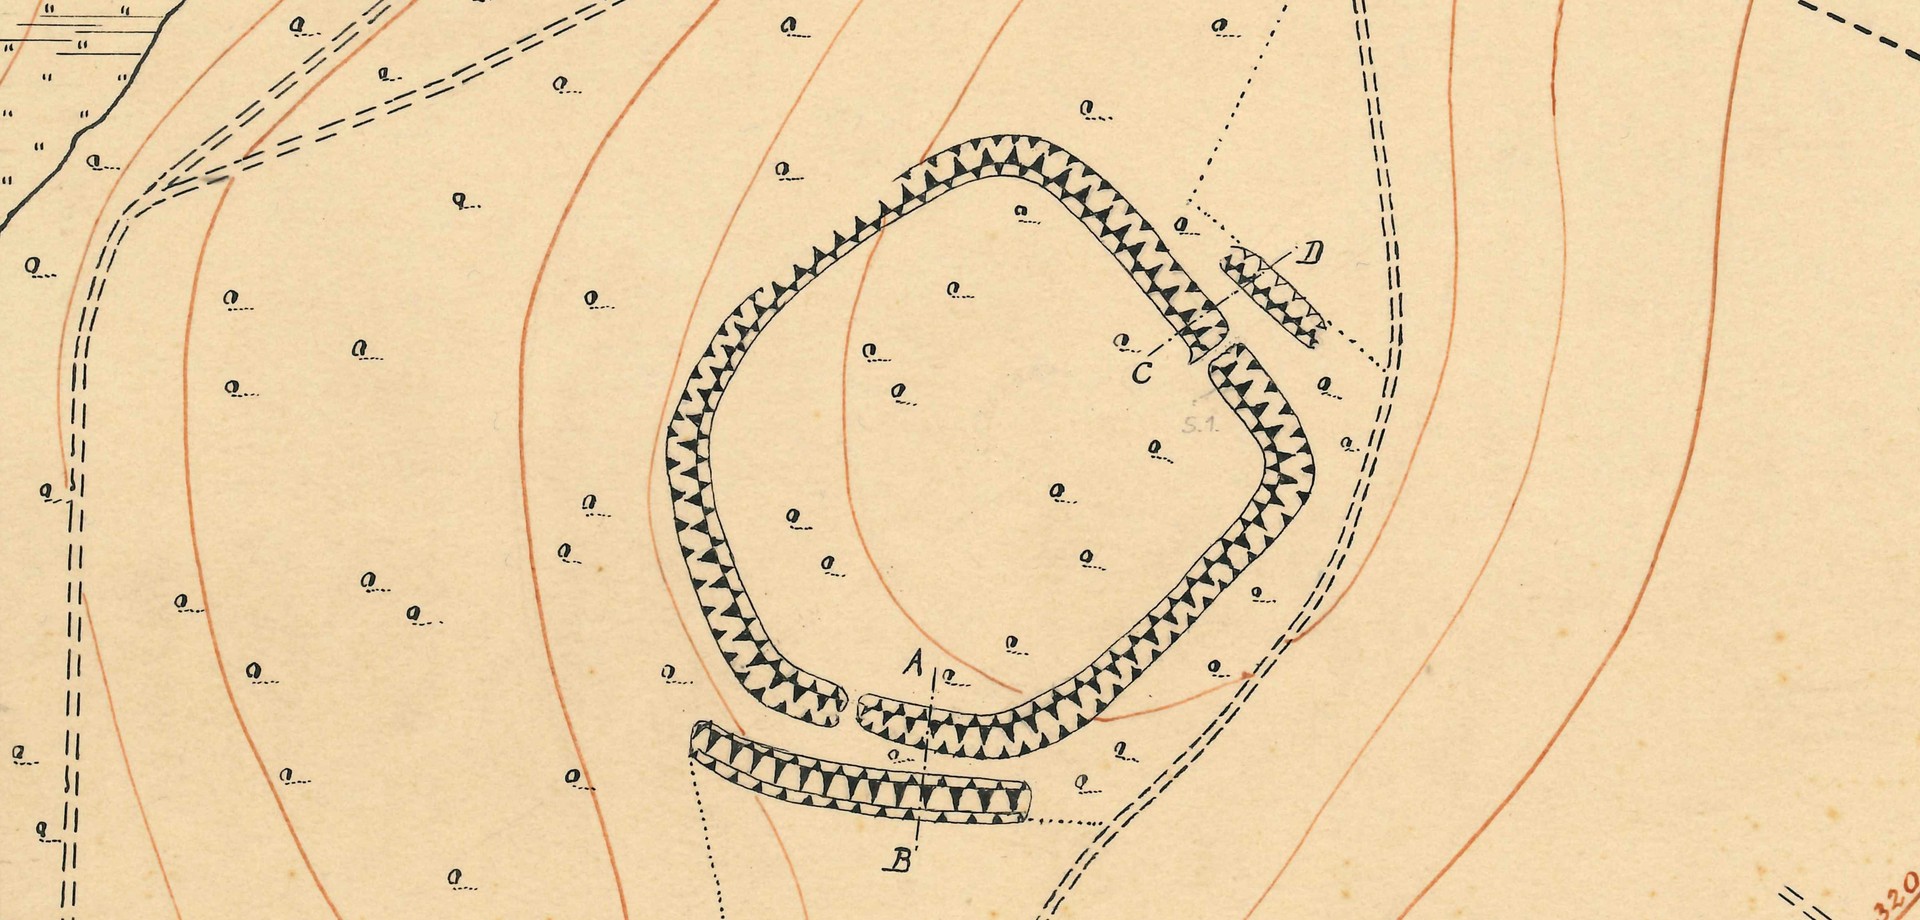 Plan des Burggrabens von Theodor Hundt aus dem Jahre 1881 (Planarchiv der Altertumskommission für Westfalen).